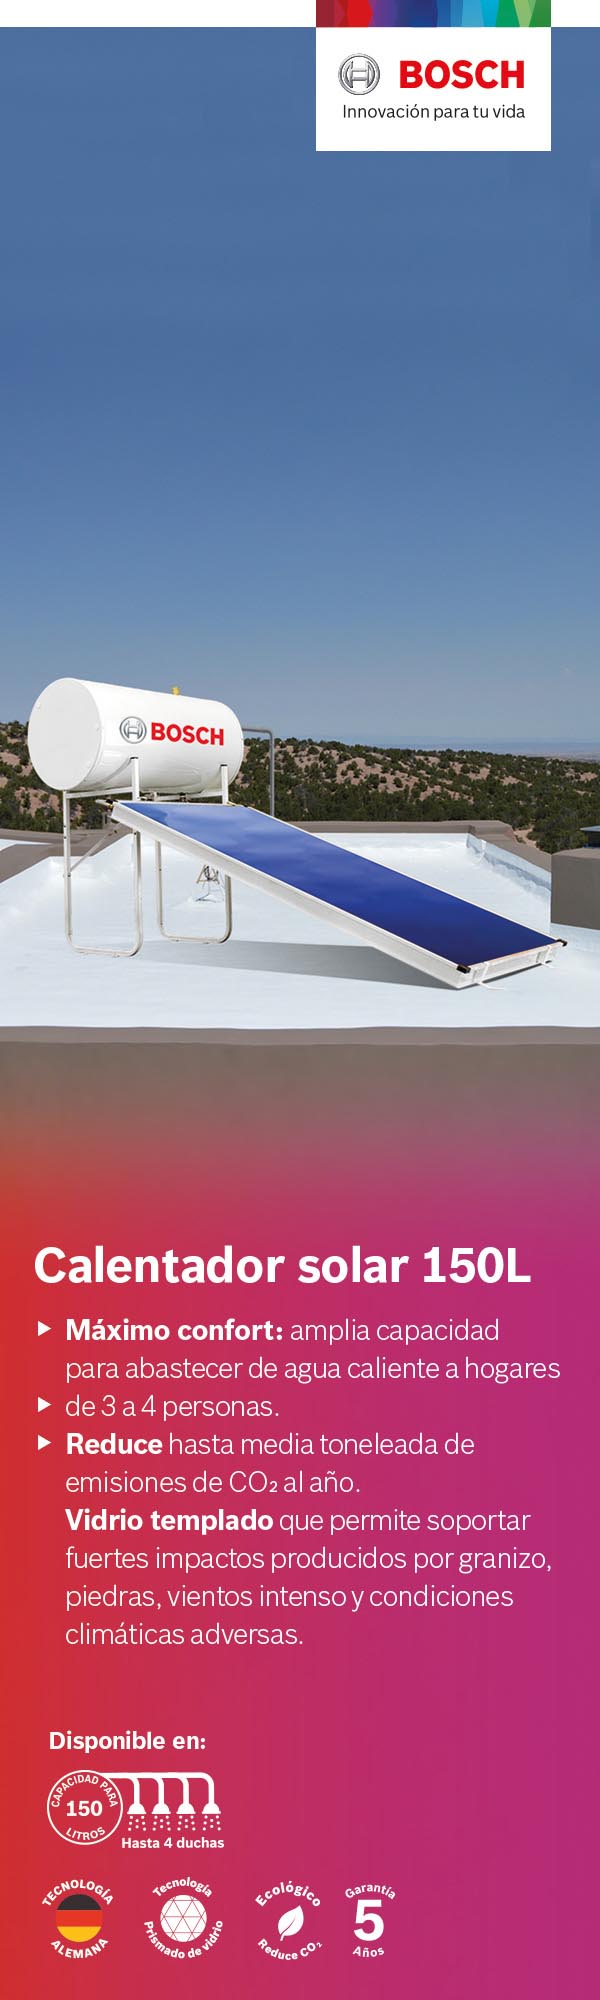 Calentadores de Agua Solar Bosch Home Depot México